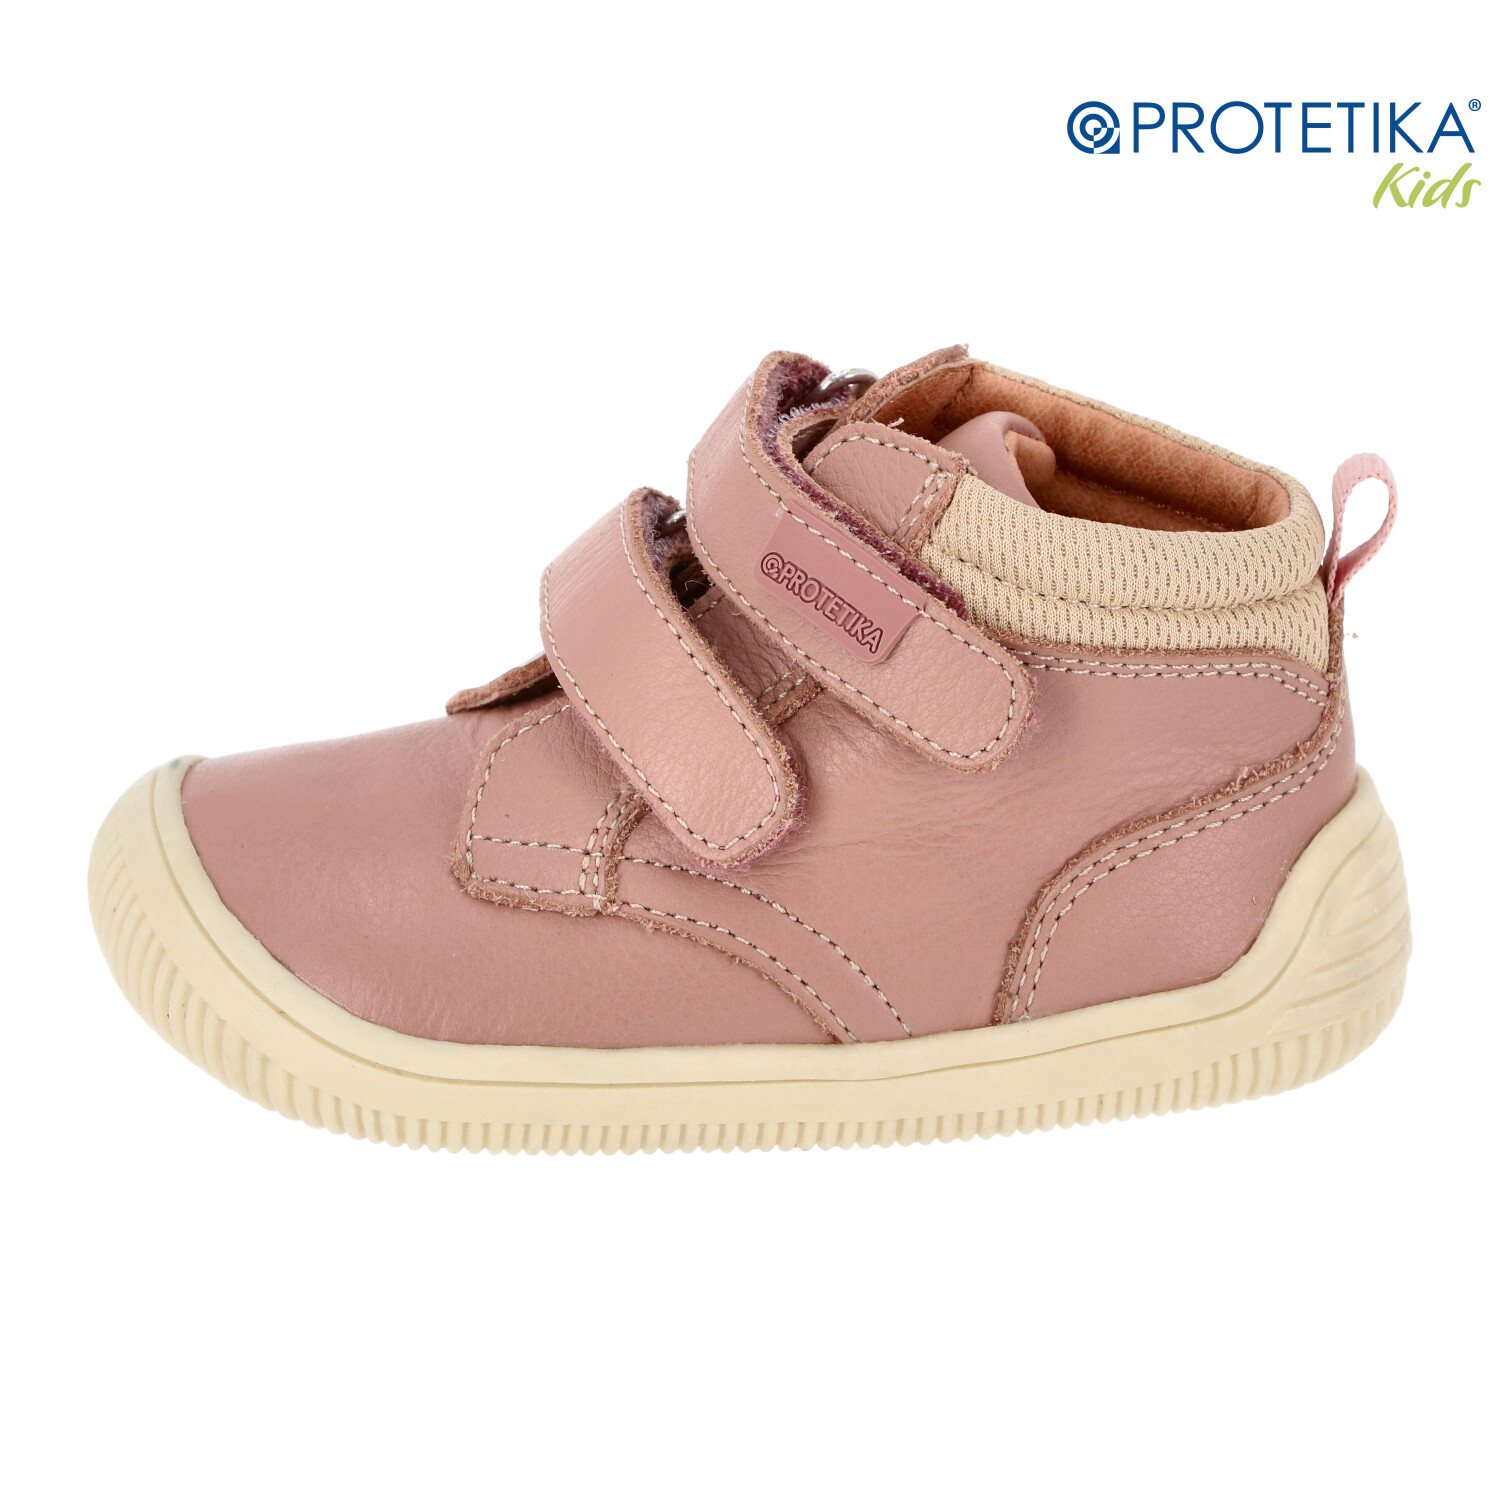 Protetika - barefootové topánky NIRA pink